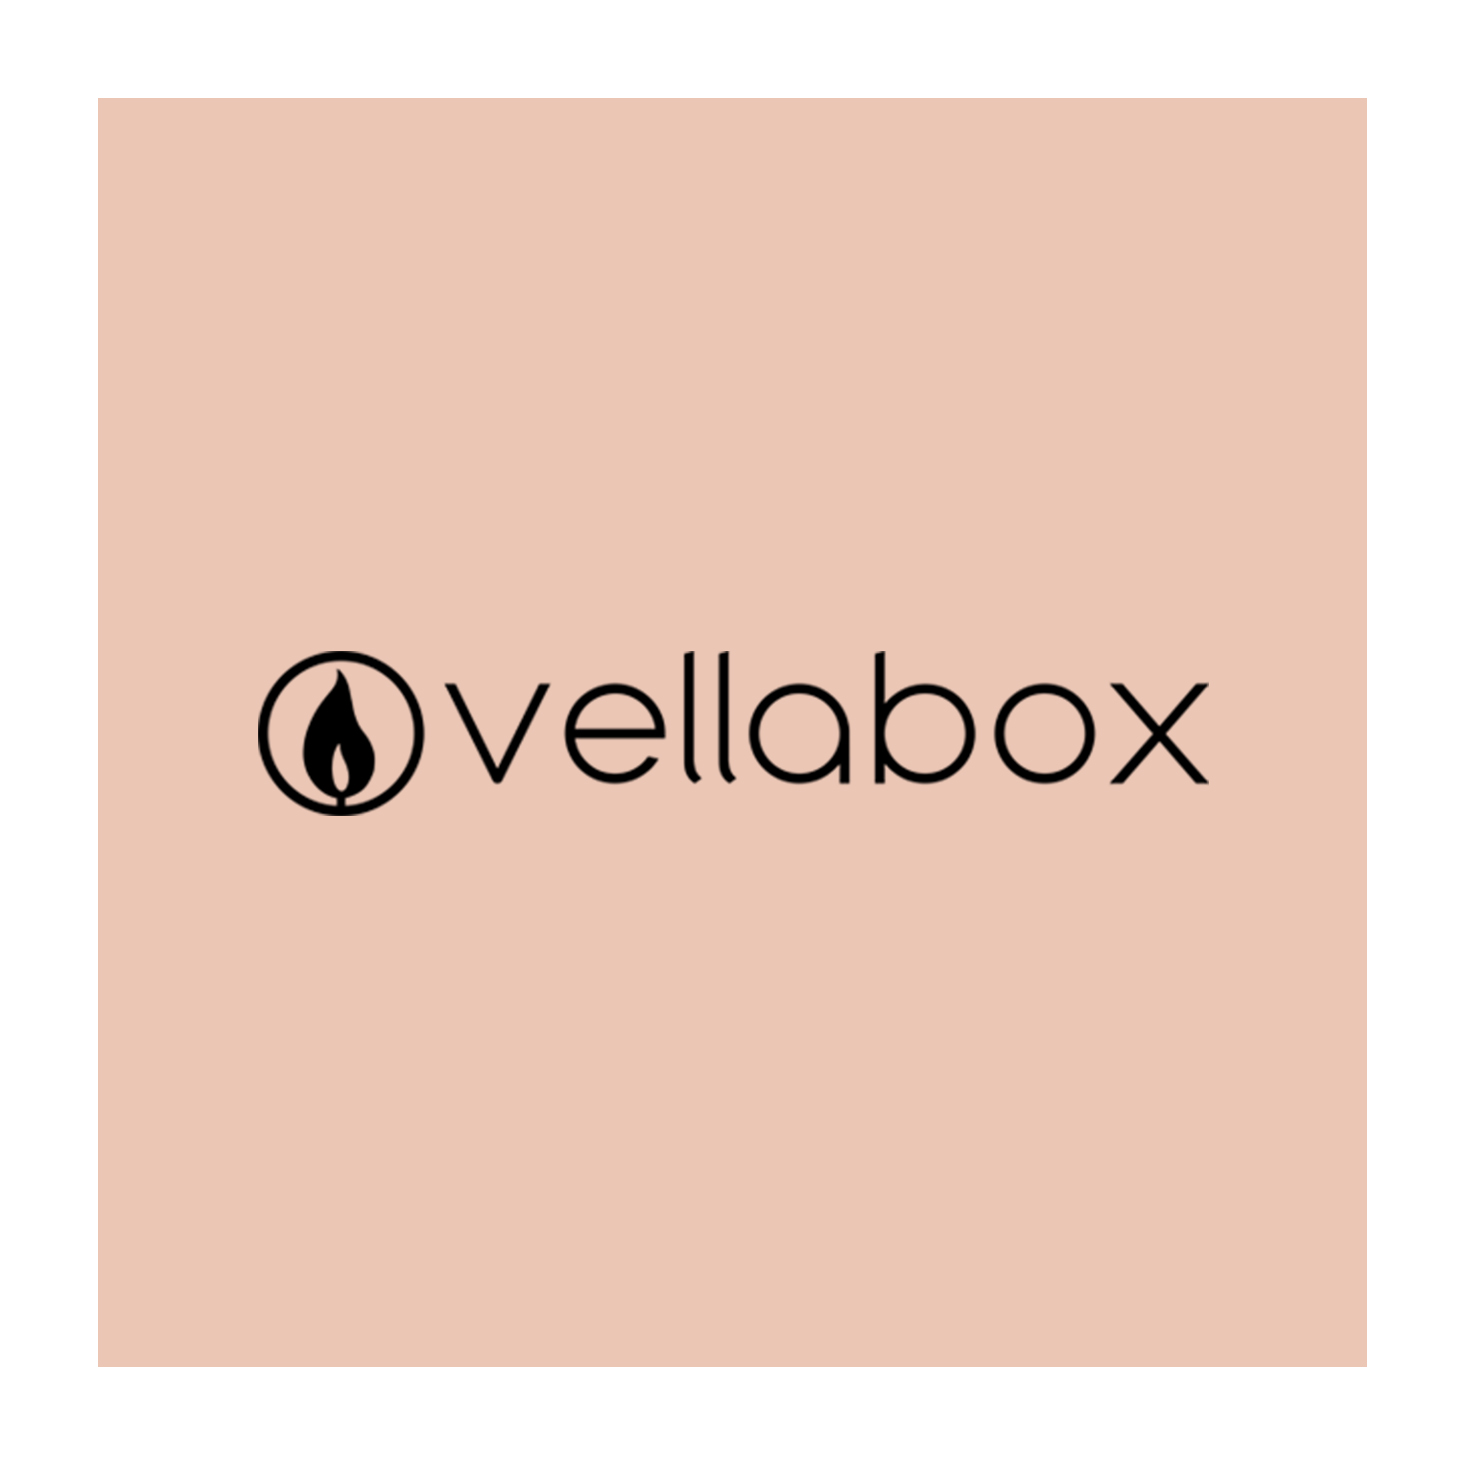 Vellabox – Better Than Black Friday 2017 Deal!